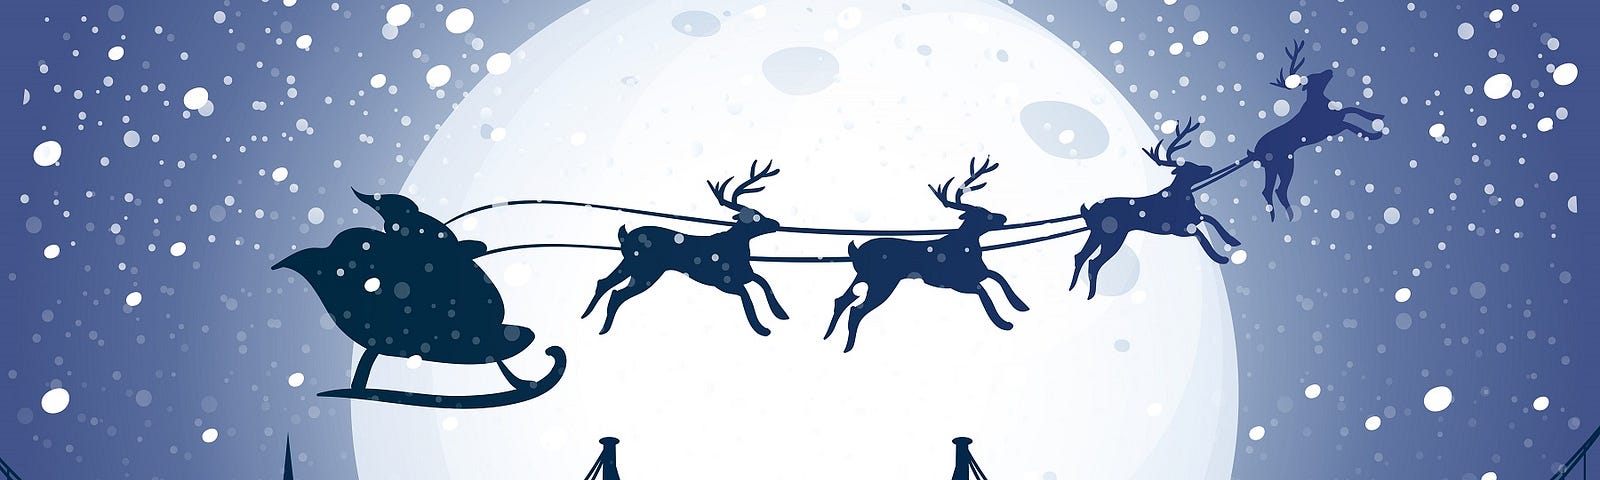 Silhouette santa and reindeer flying night sky.